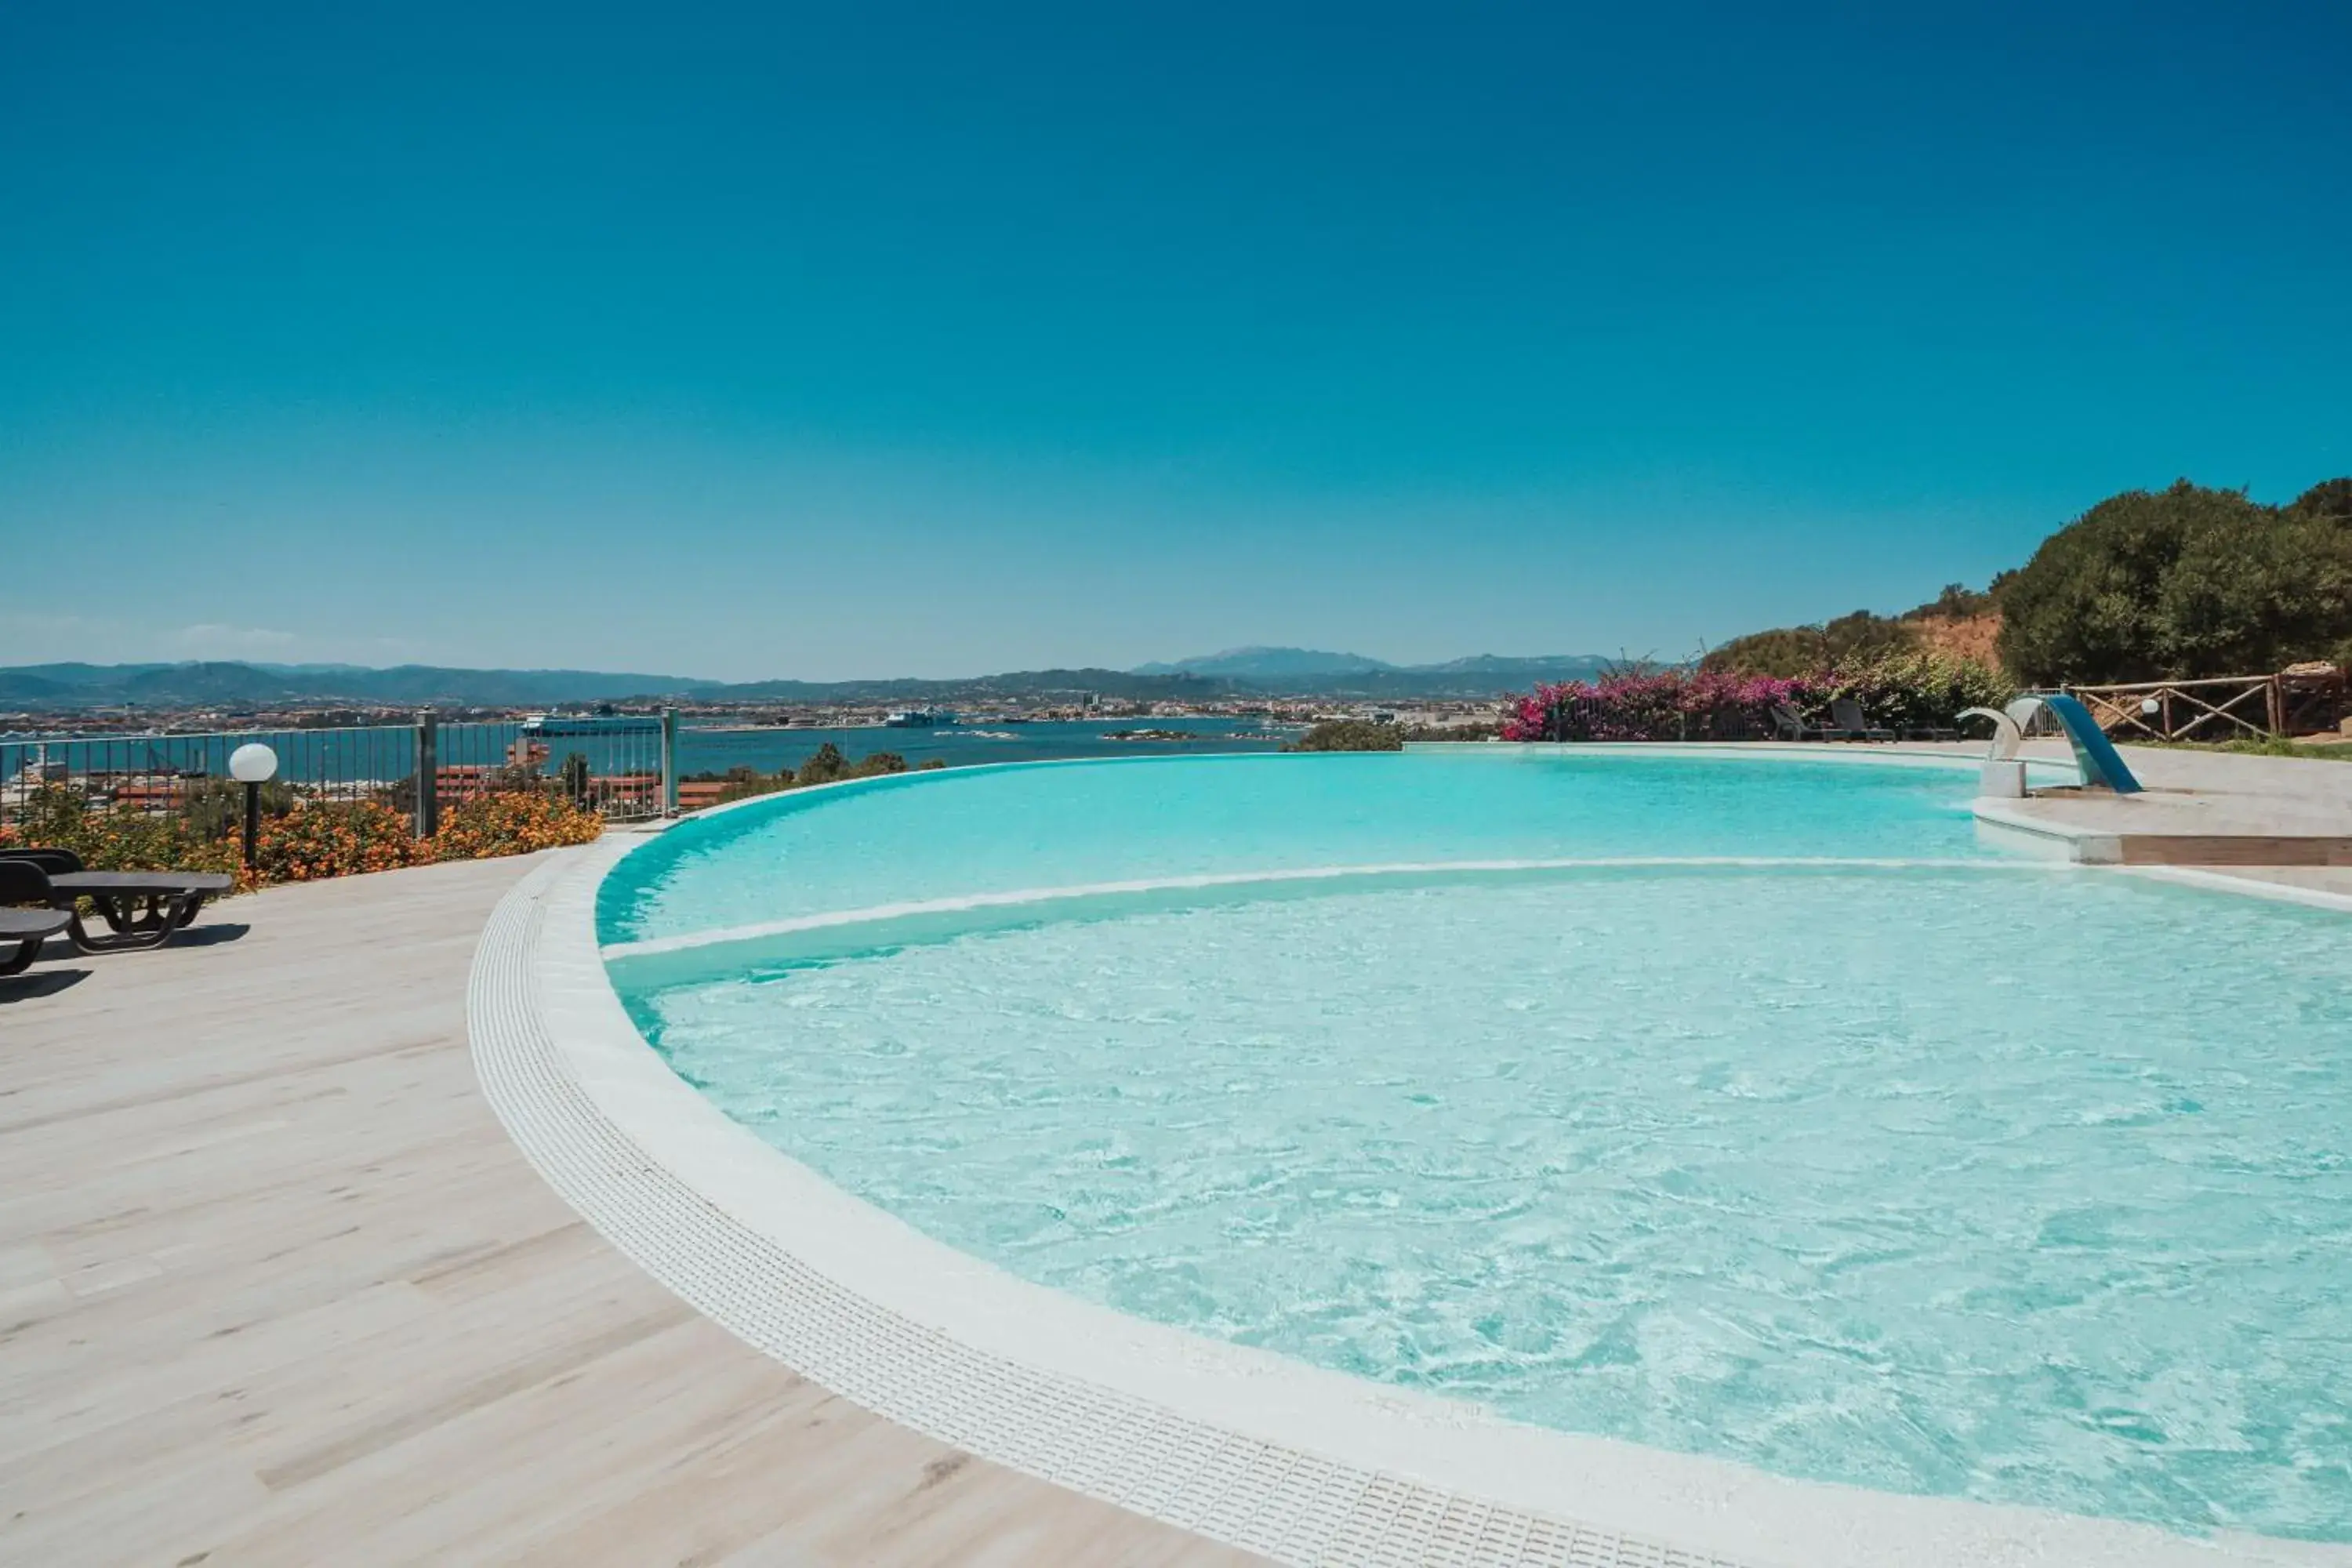 Swimming Pool in Hotel dP Olbia - Sardinia